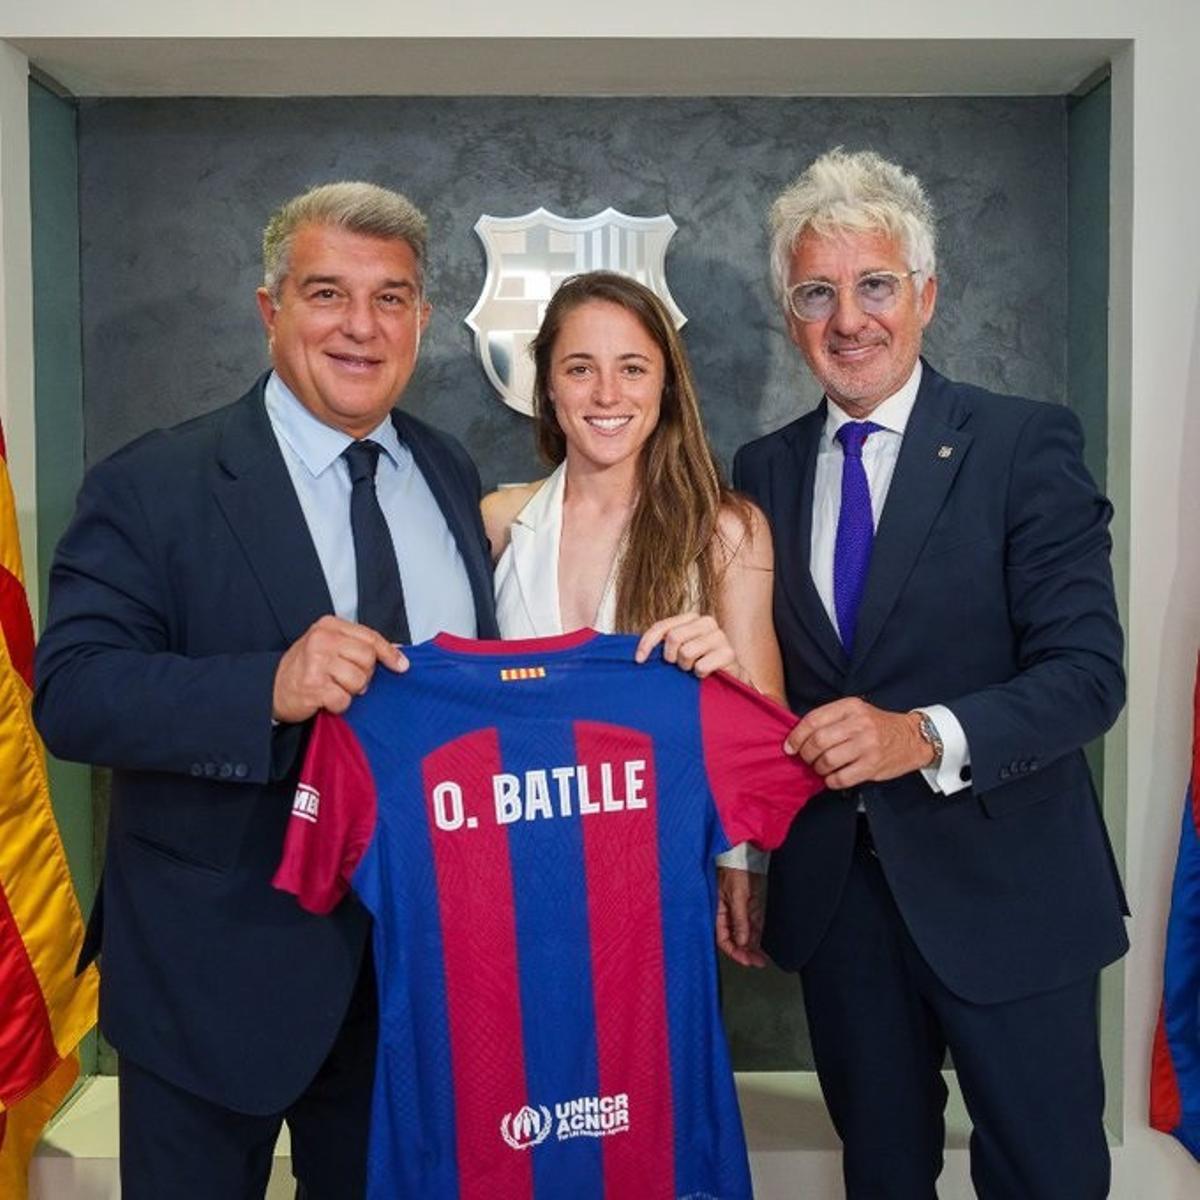 La nova jugadora del Barça mostra la samarreta blaugrana, acompanyada del president Joan Laporta i el directiu Xavi Puig